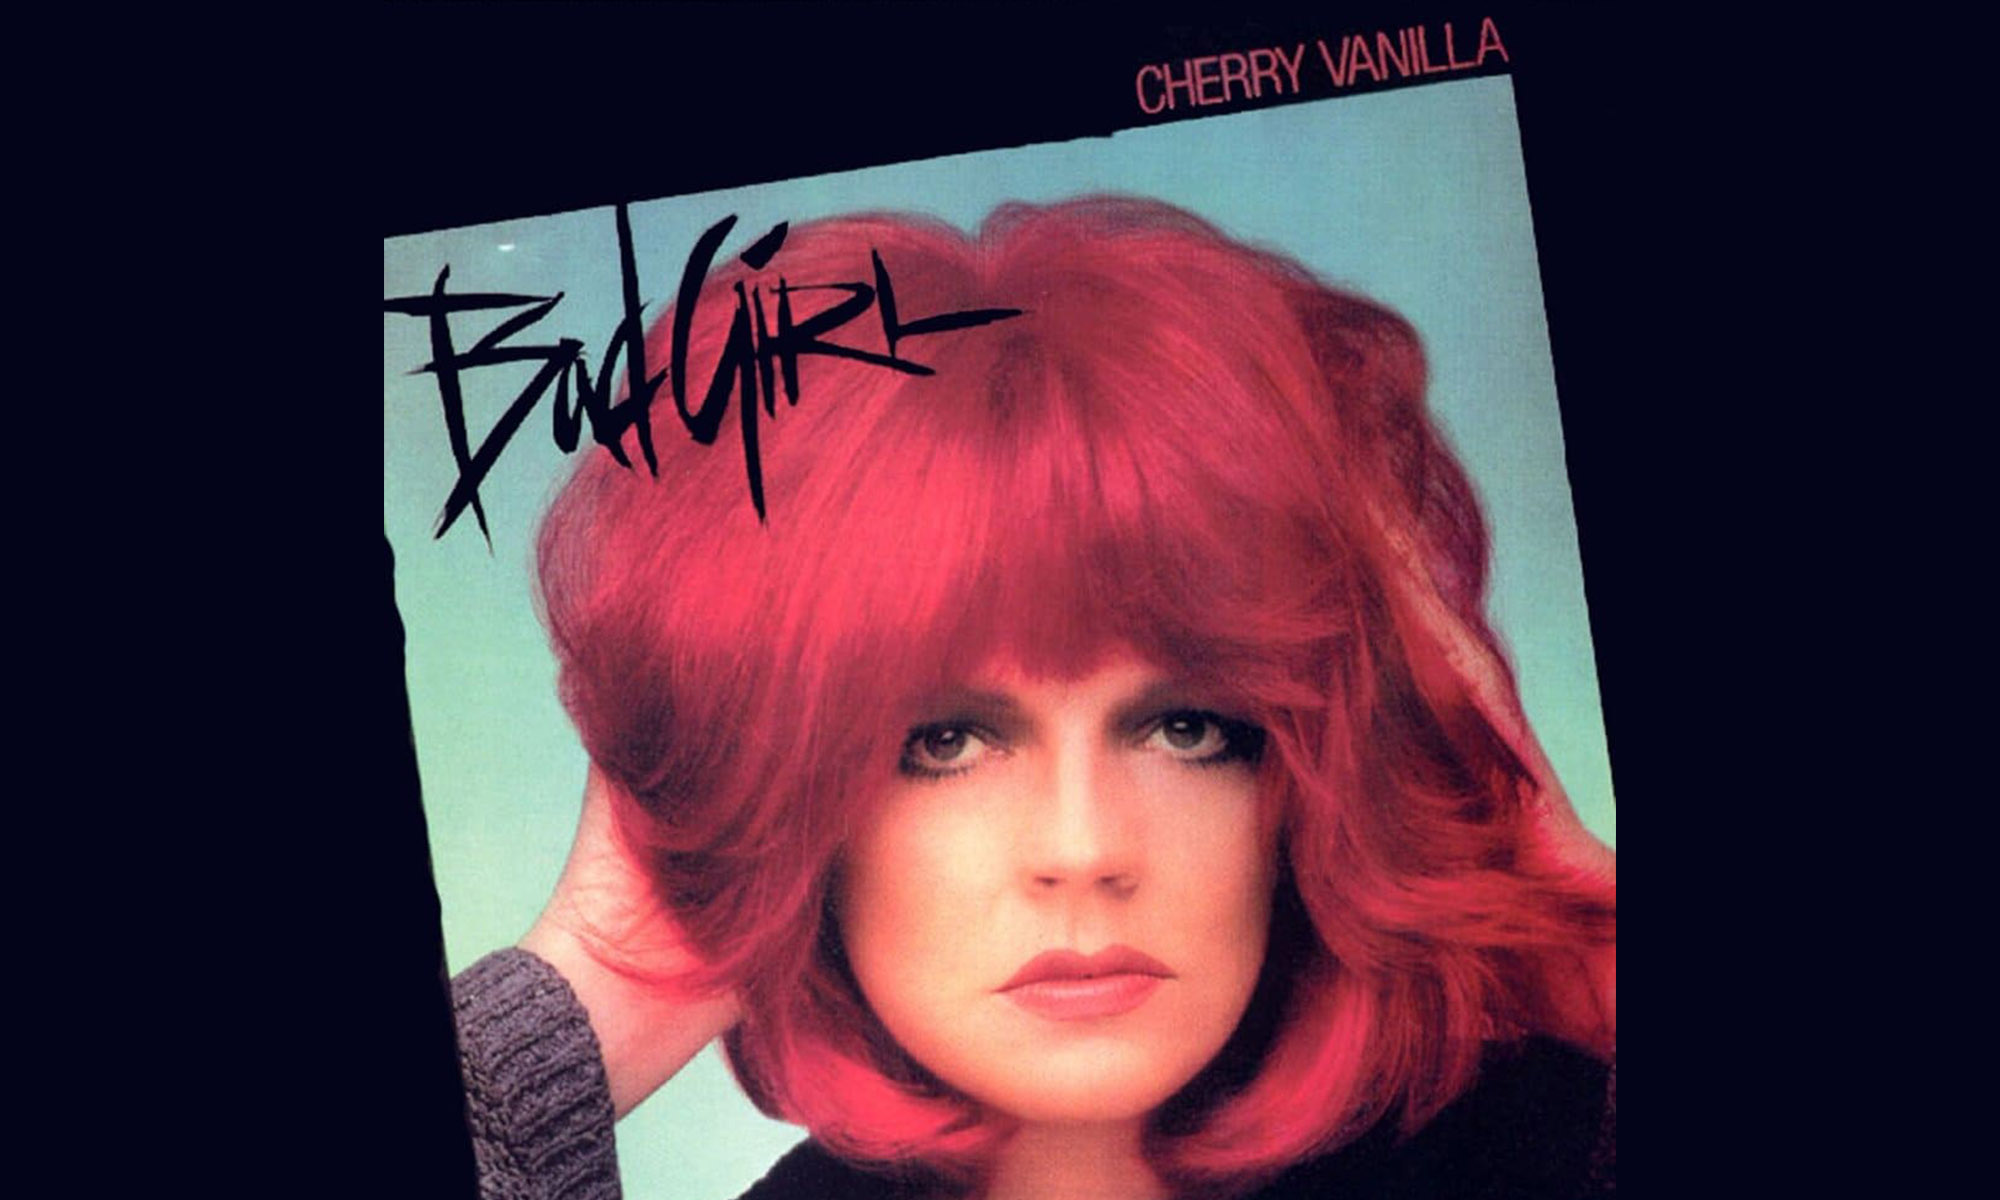 El primer álbum de Cherry Vanilla "Bad Girl"